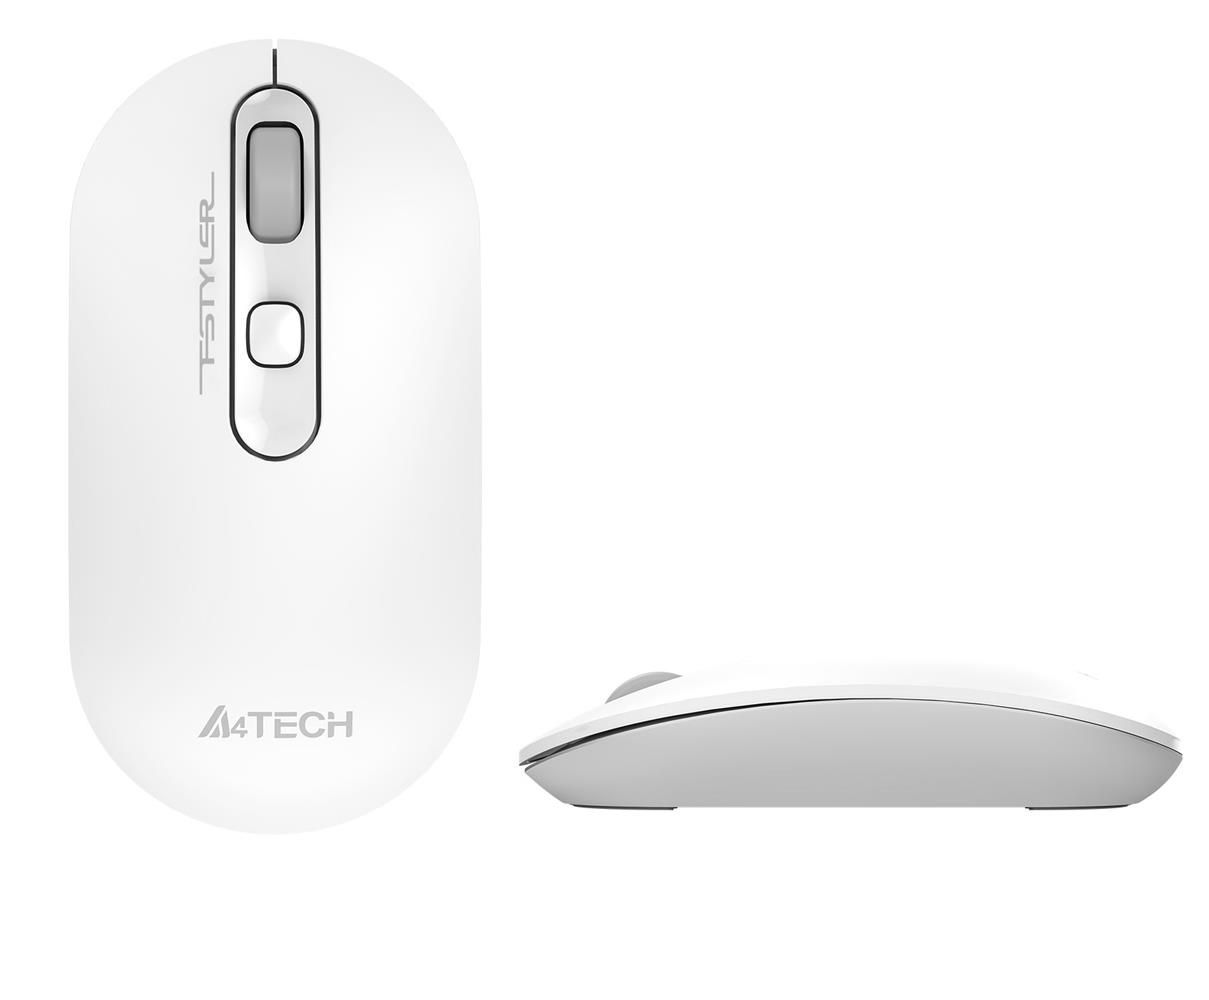 A4 Tech Fg20 Beyaz Mouse